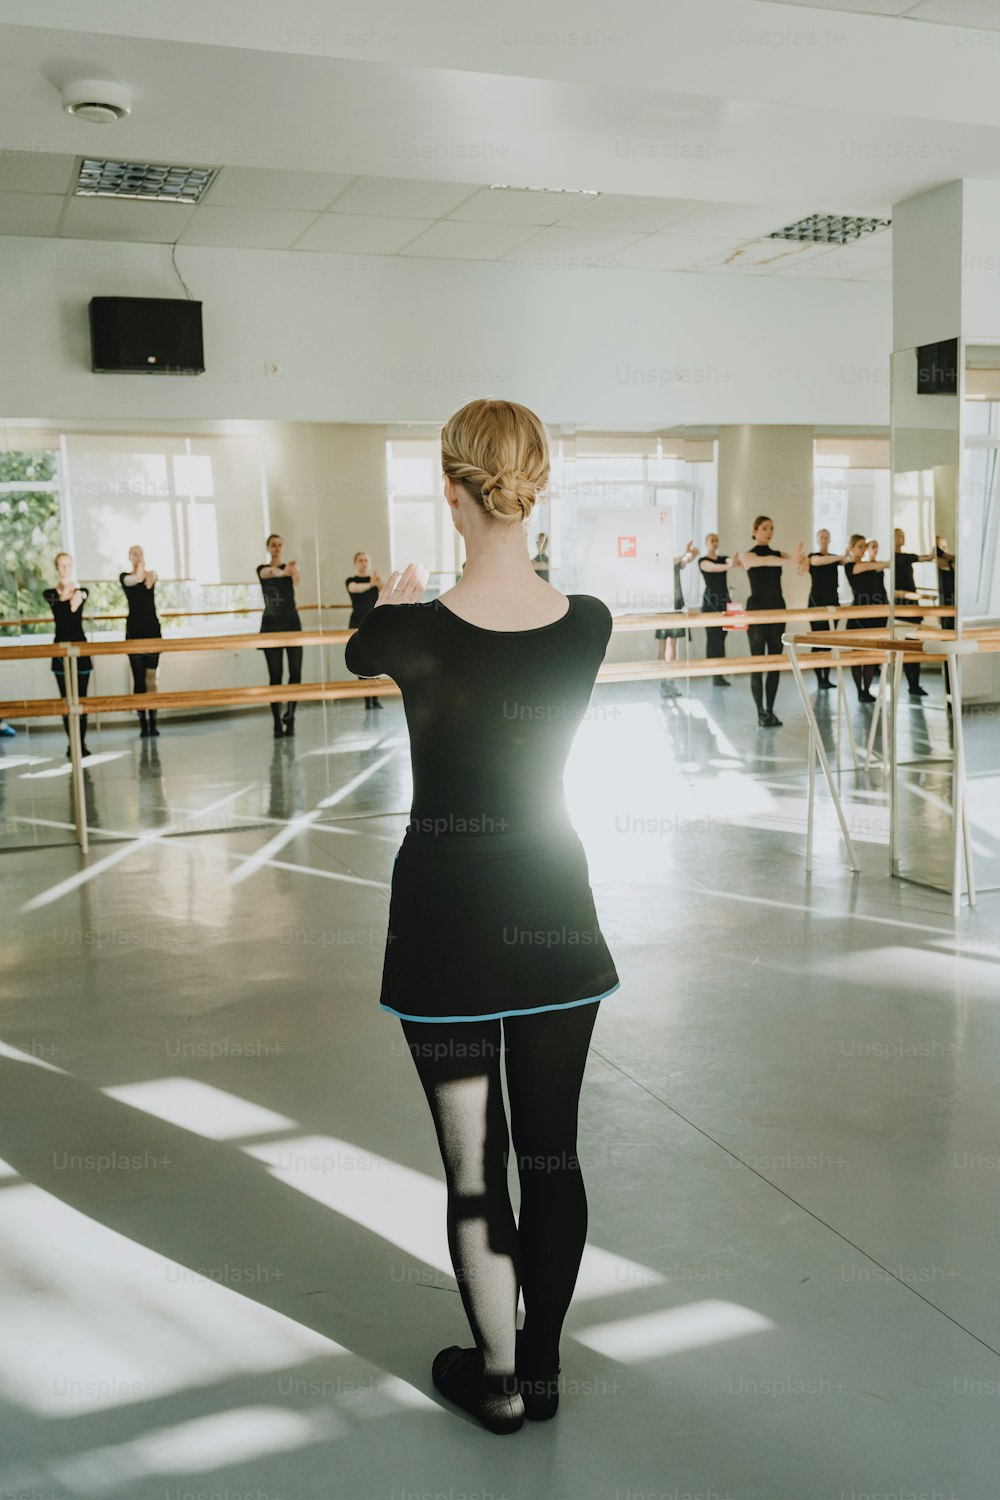 댄스 스튜디오에 서 있는 검�은 드레스를 입은 여자